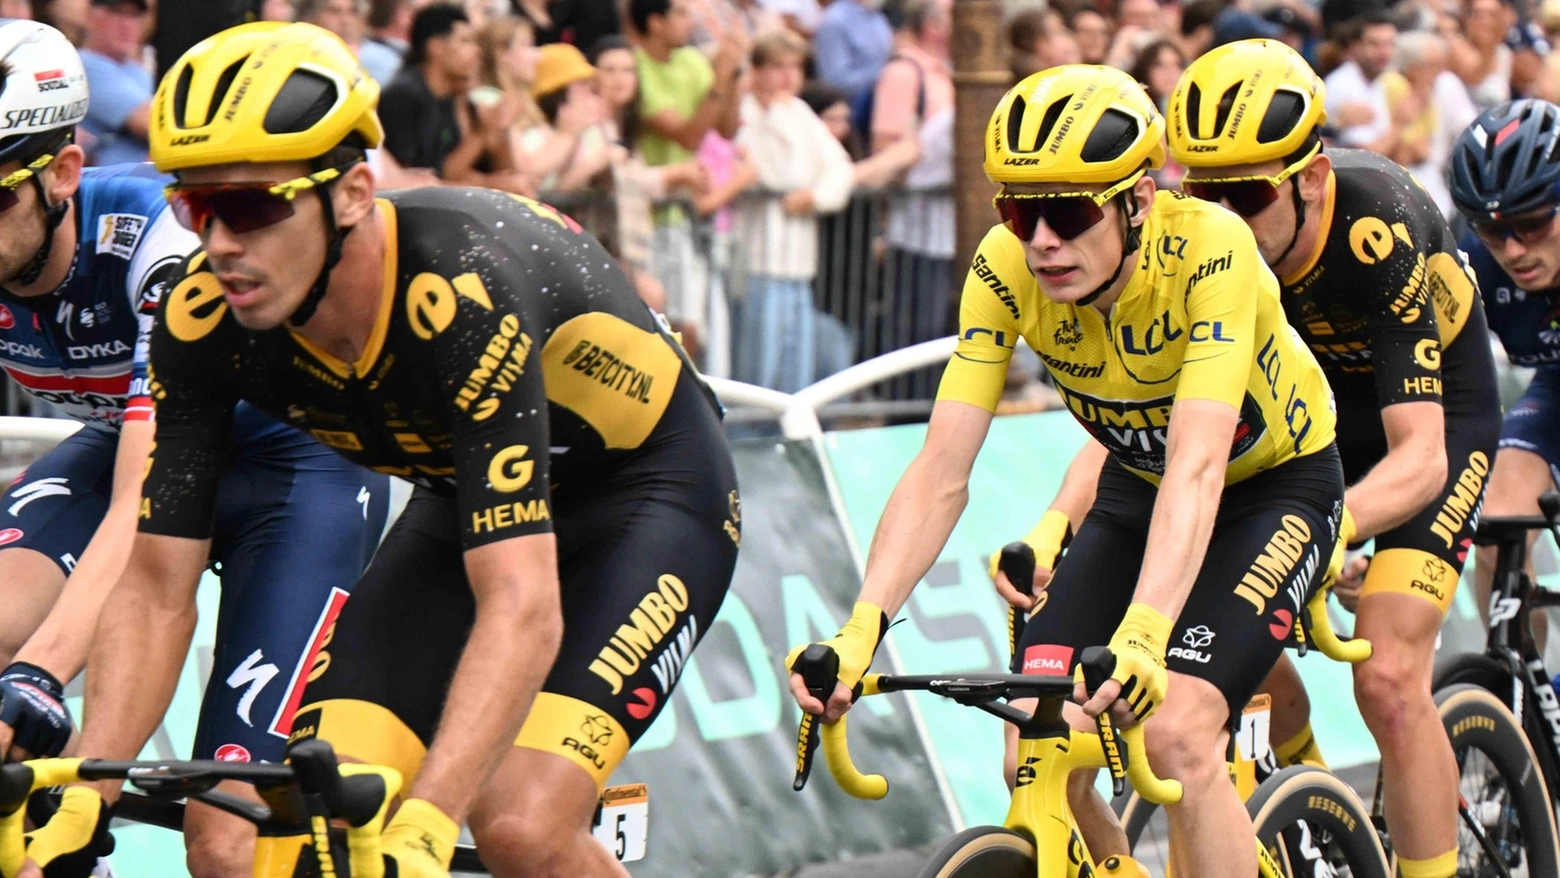 Arriva il Tour de France, cambia la viabilità: via Ausa chiusa sabato